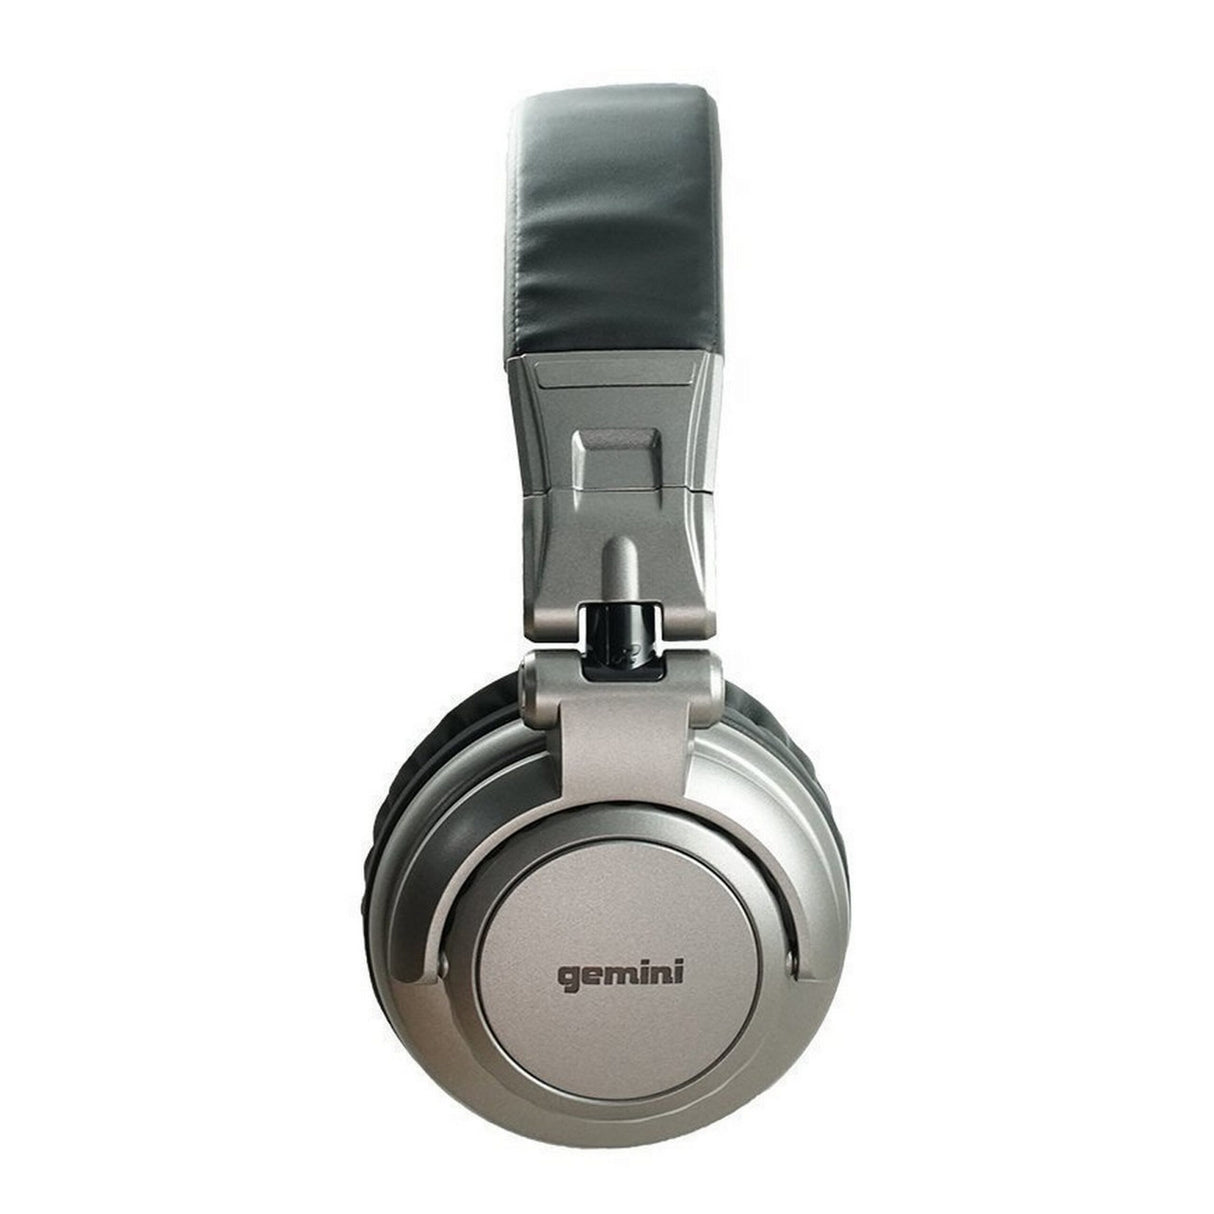 Gemini DJX-500 Professional DJ Headphone